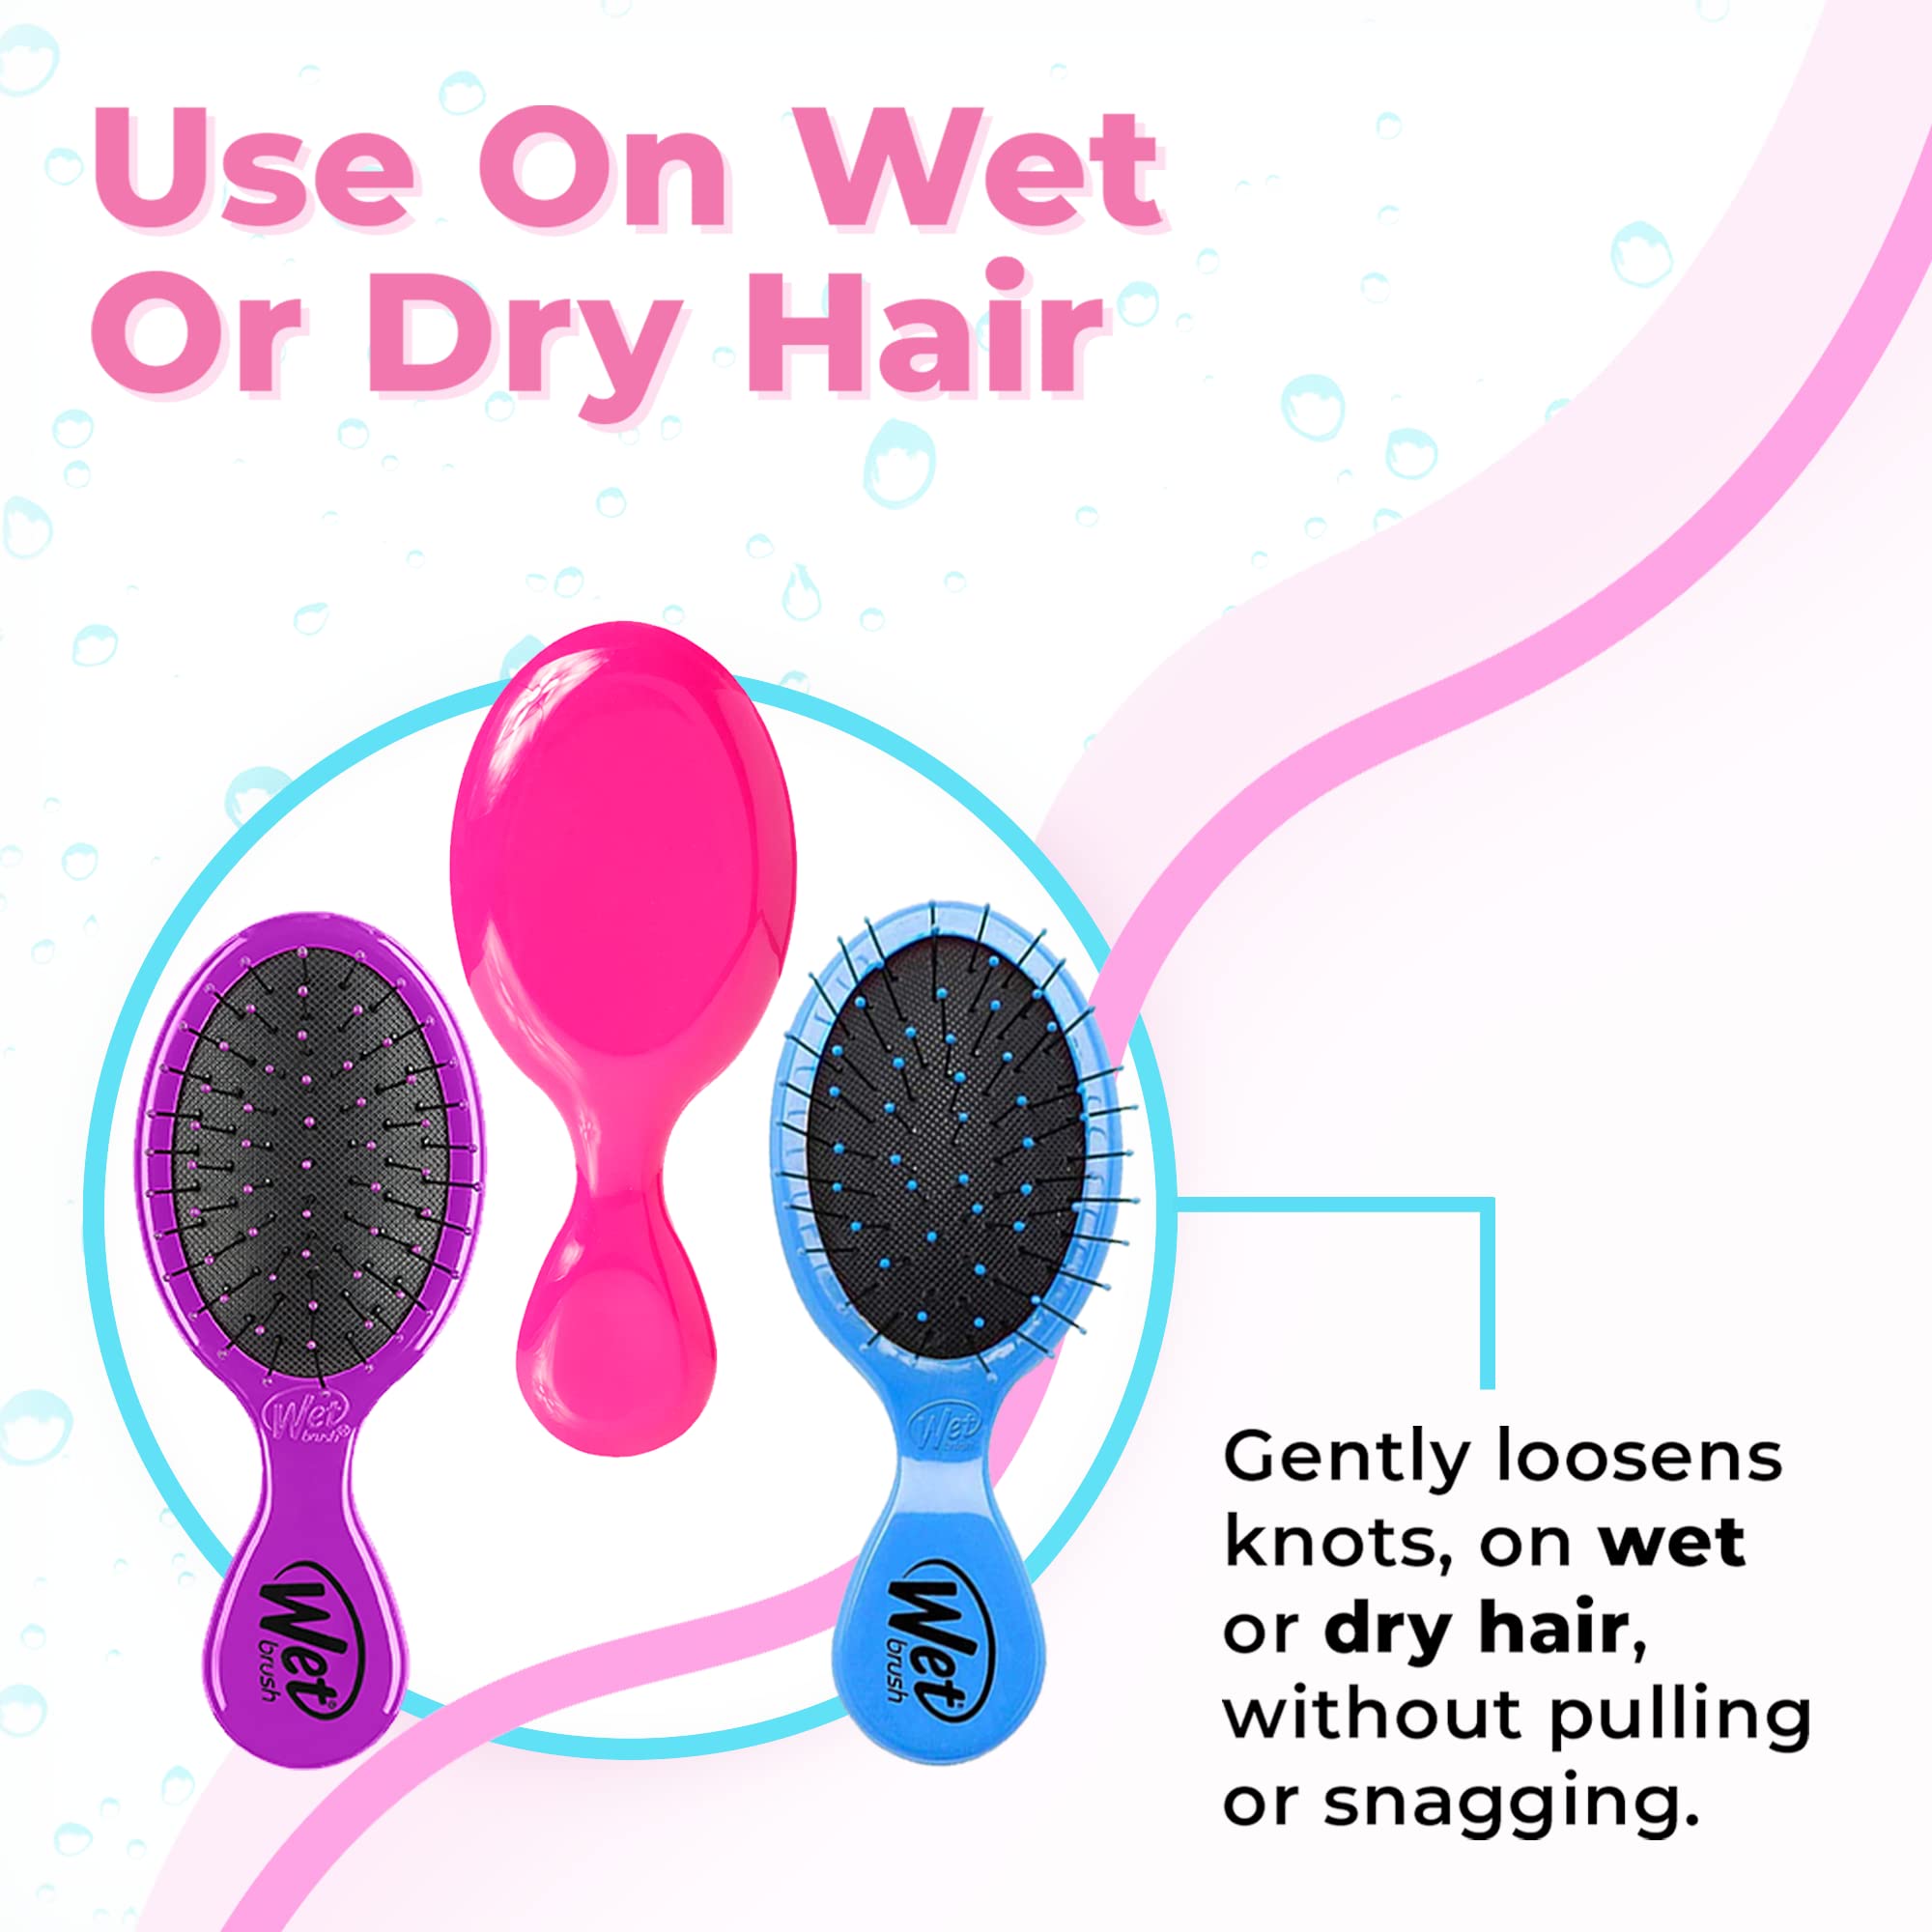 Wet Brush Multi-Pack Squirt Detangler Hair Brushes - Pink, Purple & Blue, 3-Pack - Mini Detangling Brush with Soft IntelliFlex Bristles - Pain-Free Hair Brush for Curly & Thick Hair - Women & Men